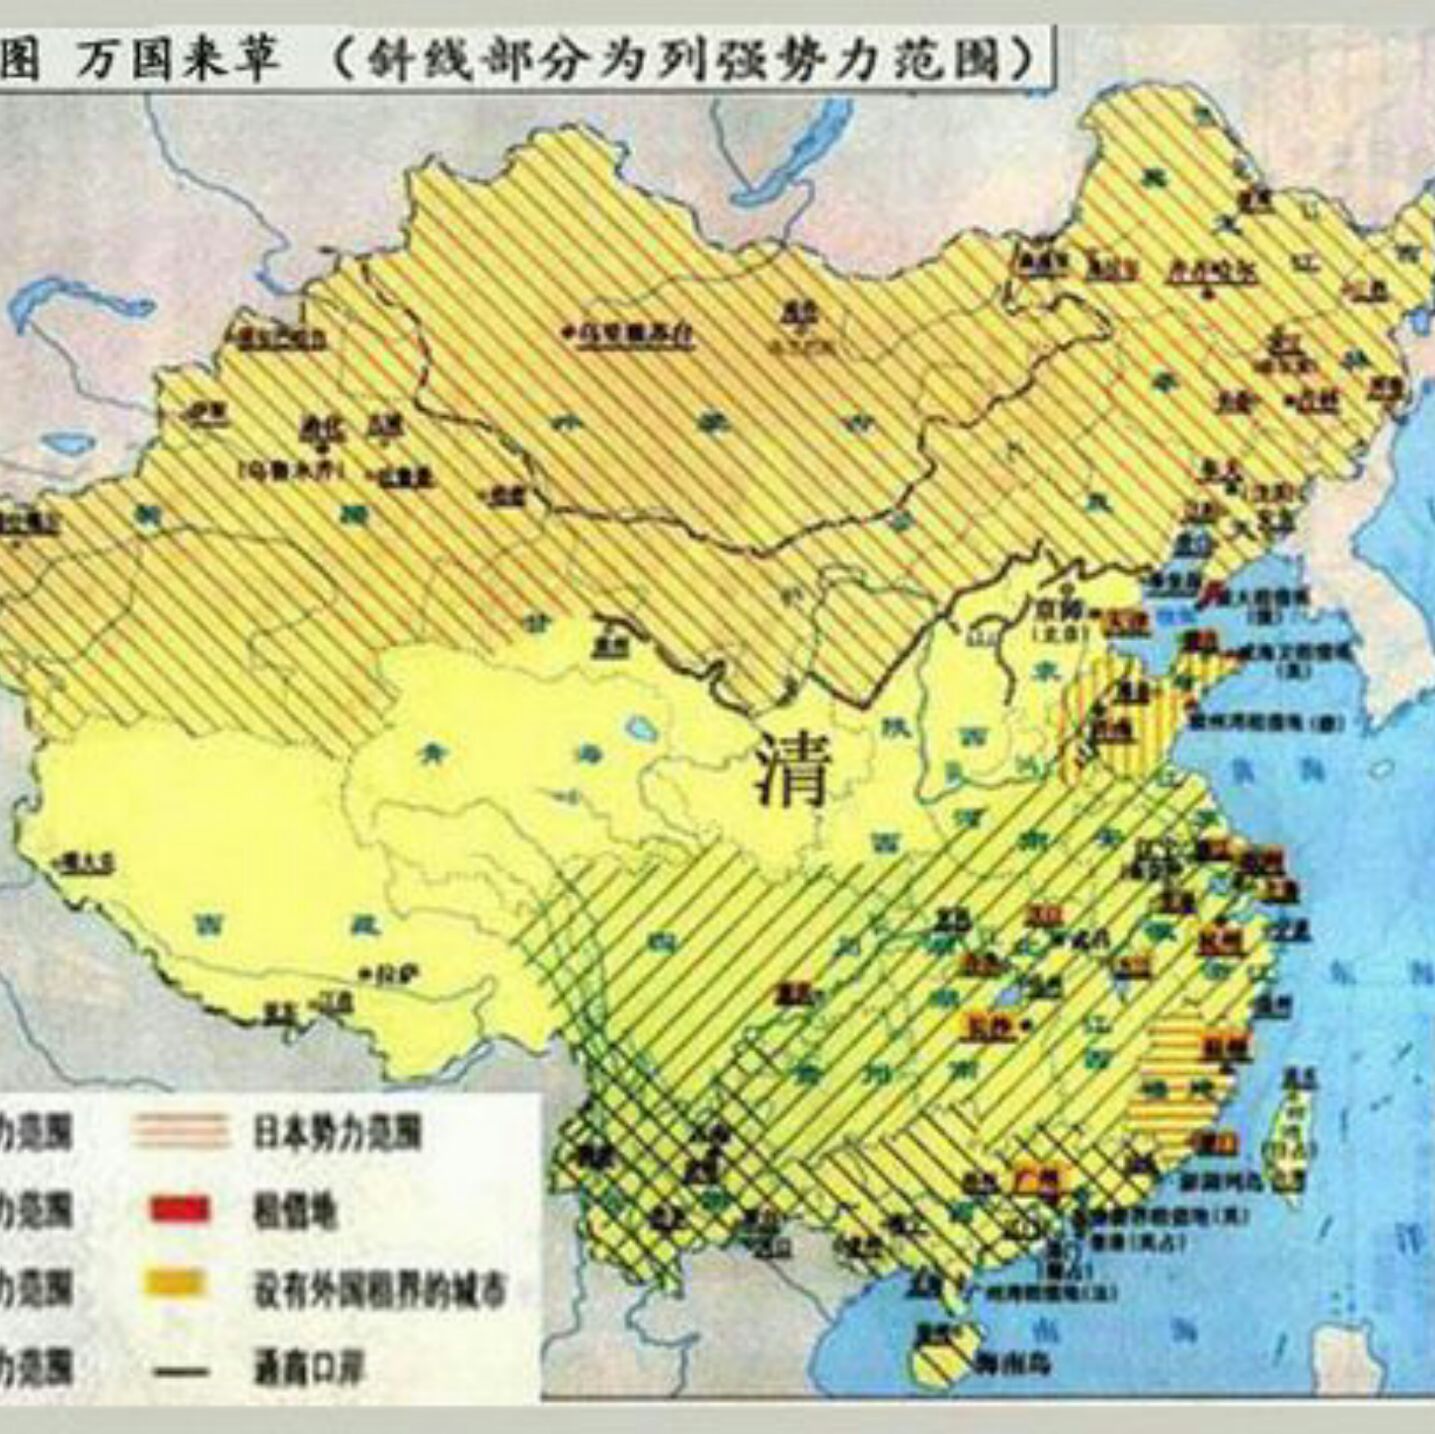 来看看最后清朝的地图吧!中国现在的版图就是新中国打下来的!